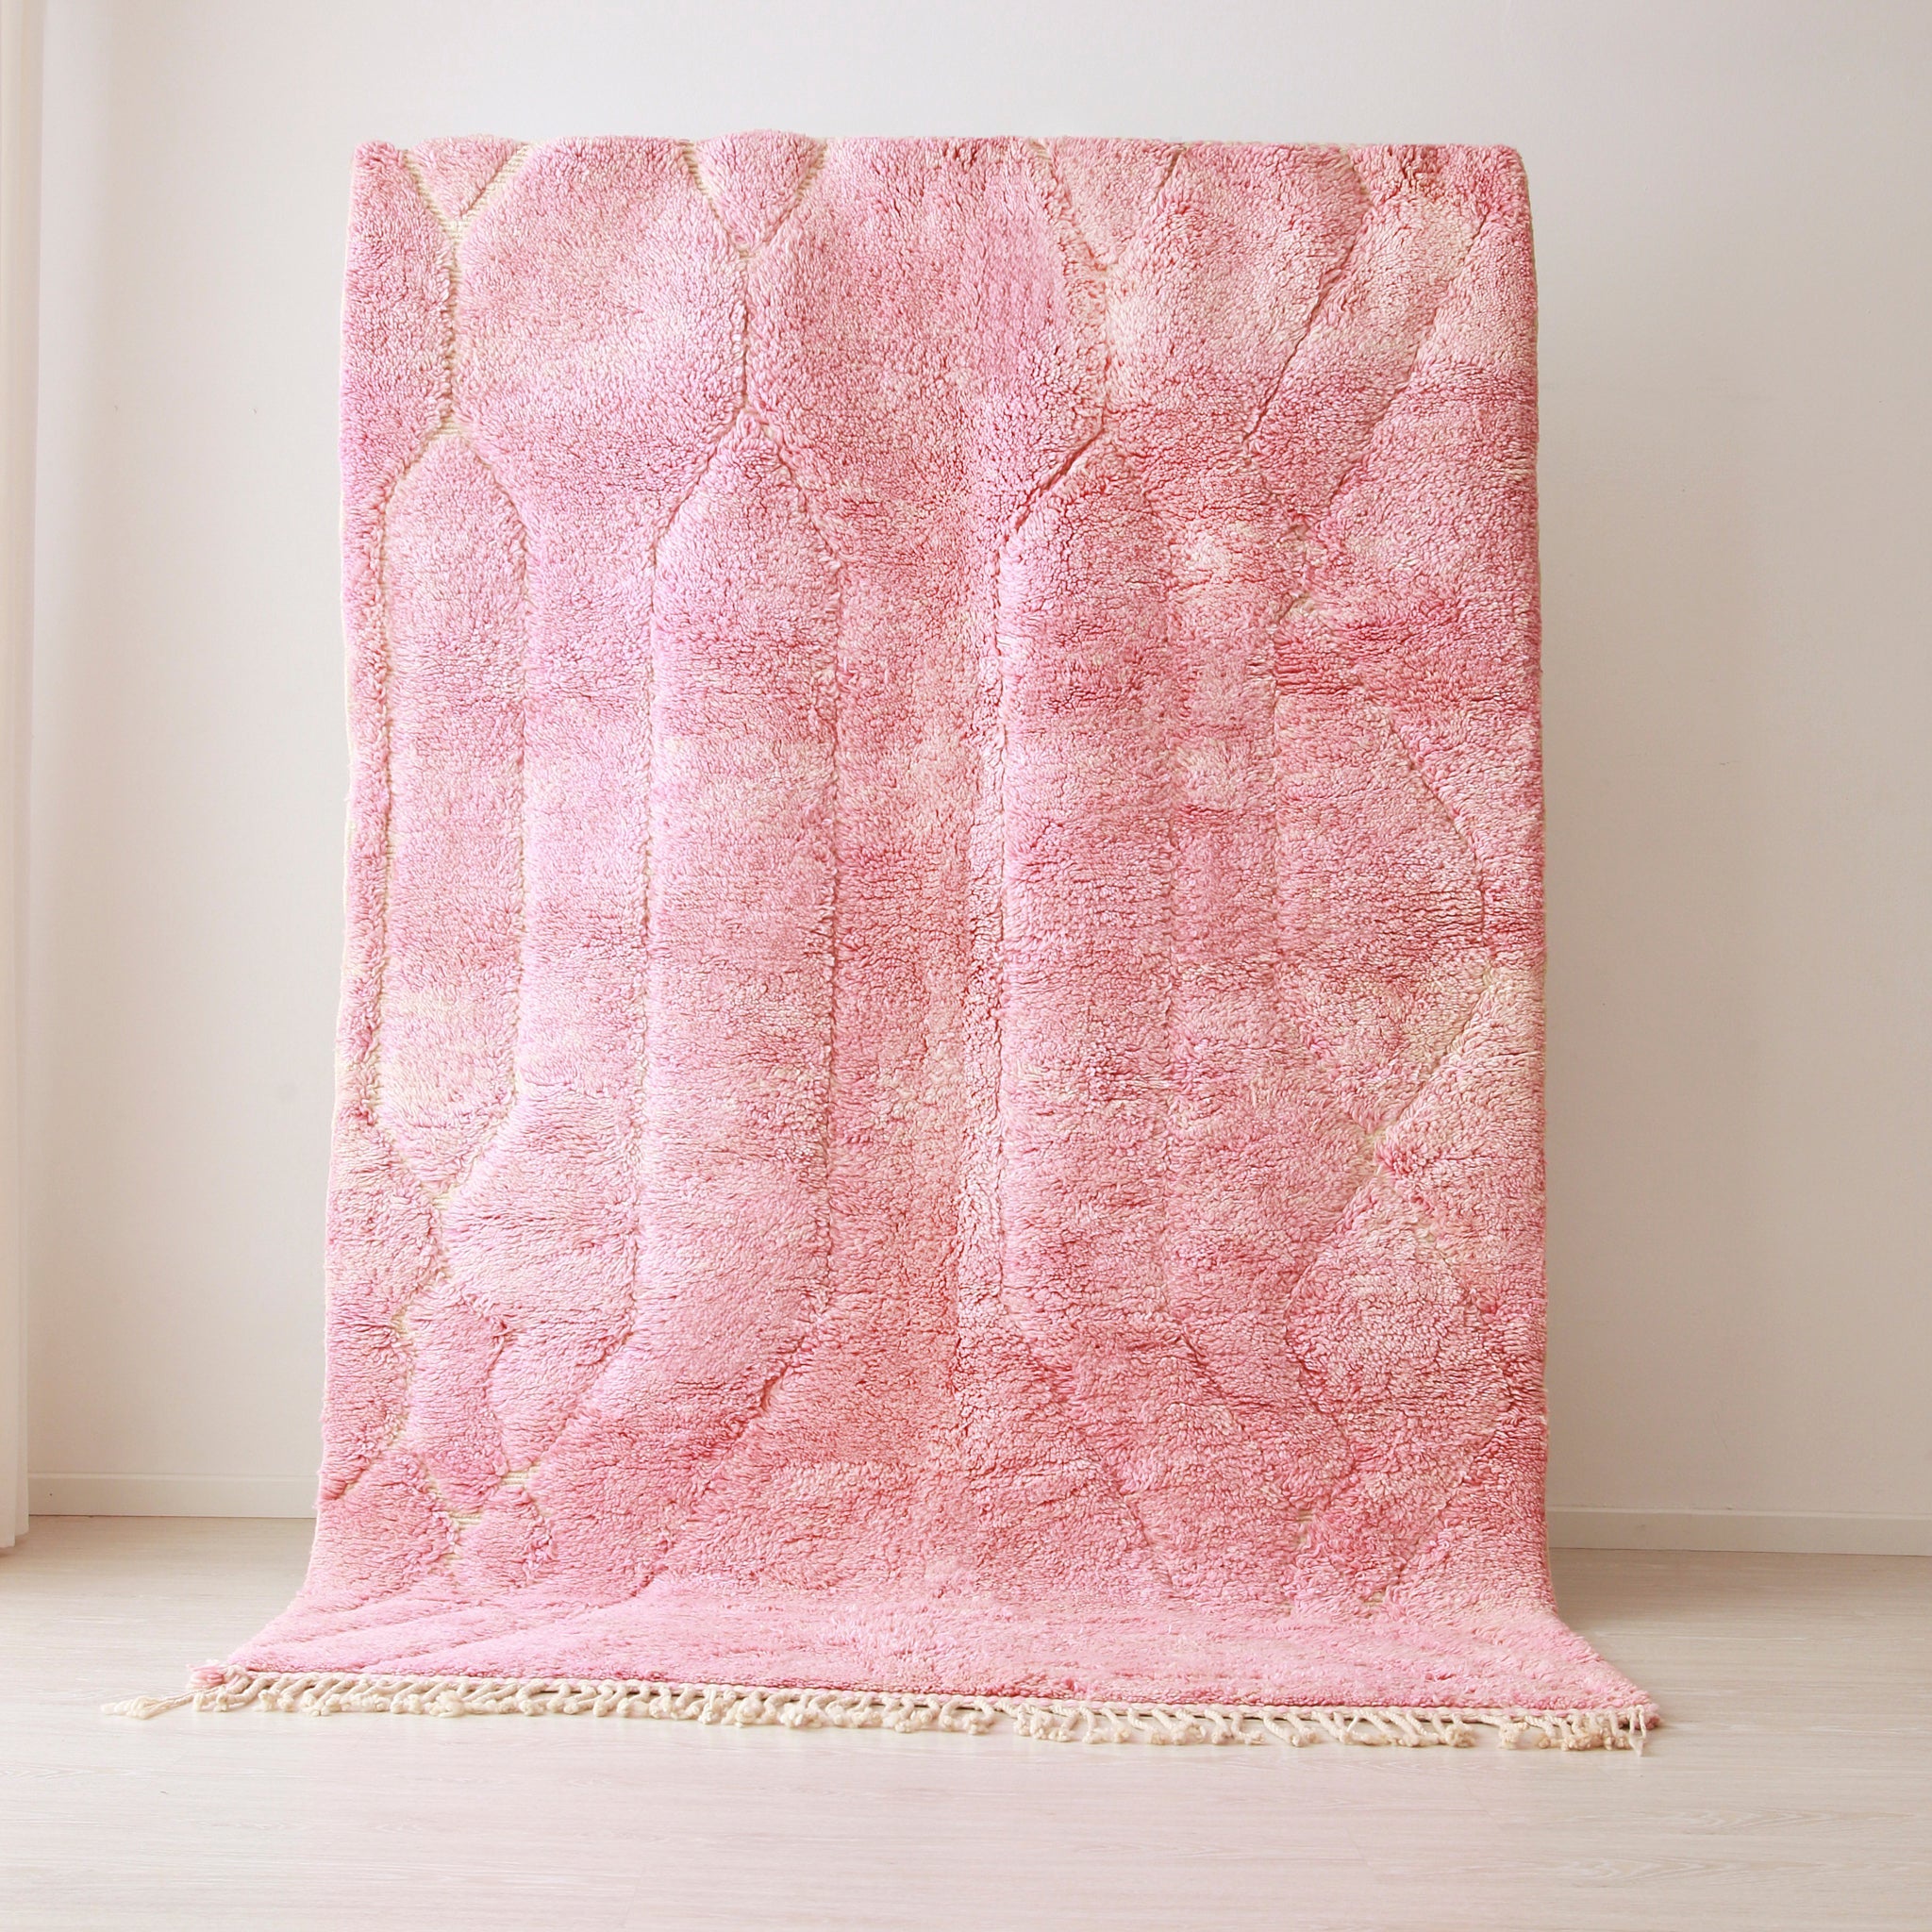 Tappeto beni mrirt appeso realizzato a mano con lana tinta di rosa